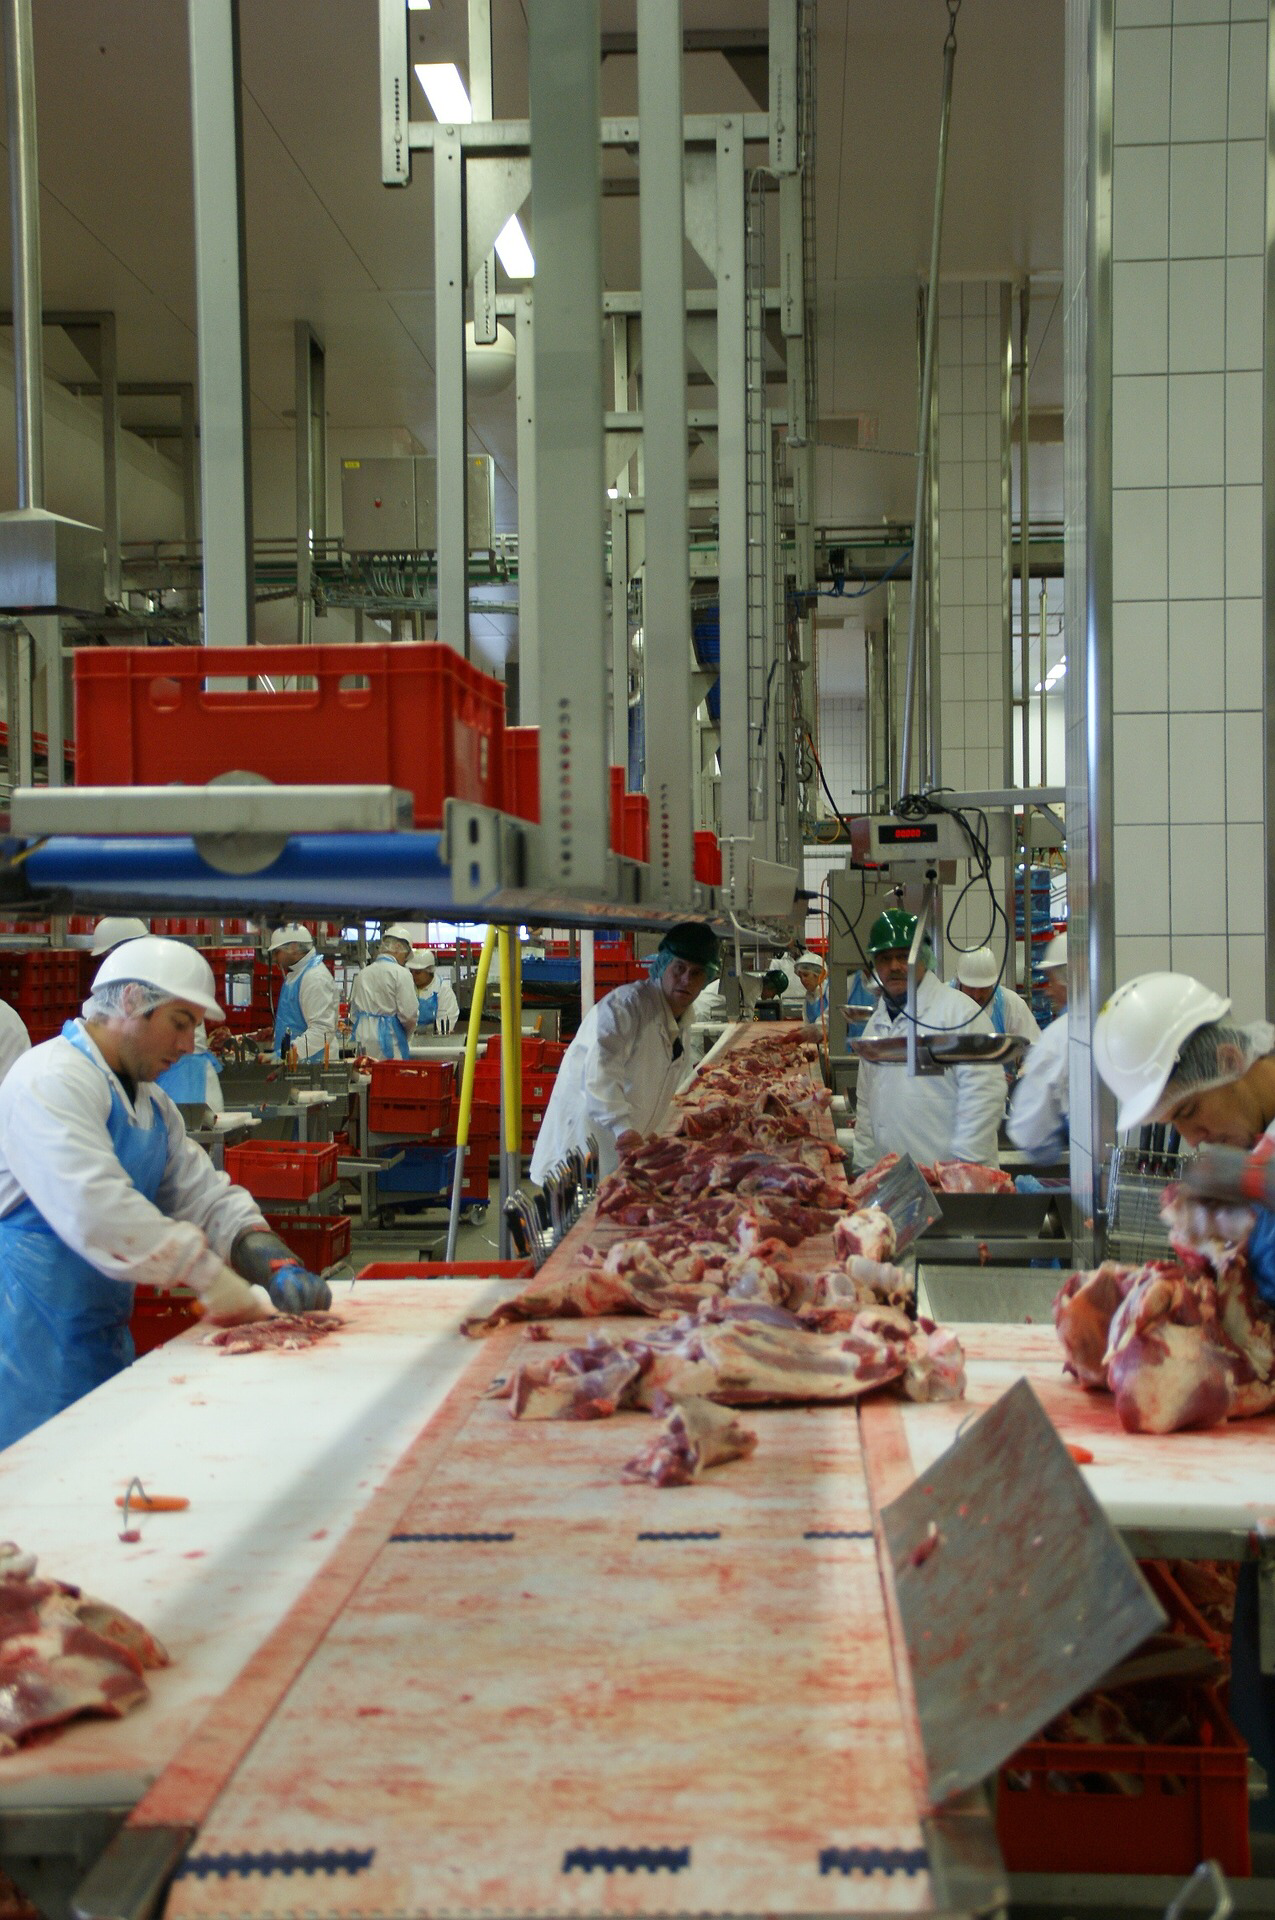 Jüngst machten die Bedingungen in der Fleischindustrie in Deutschland Negativschlagzeilen. (c) www.pixabay.com